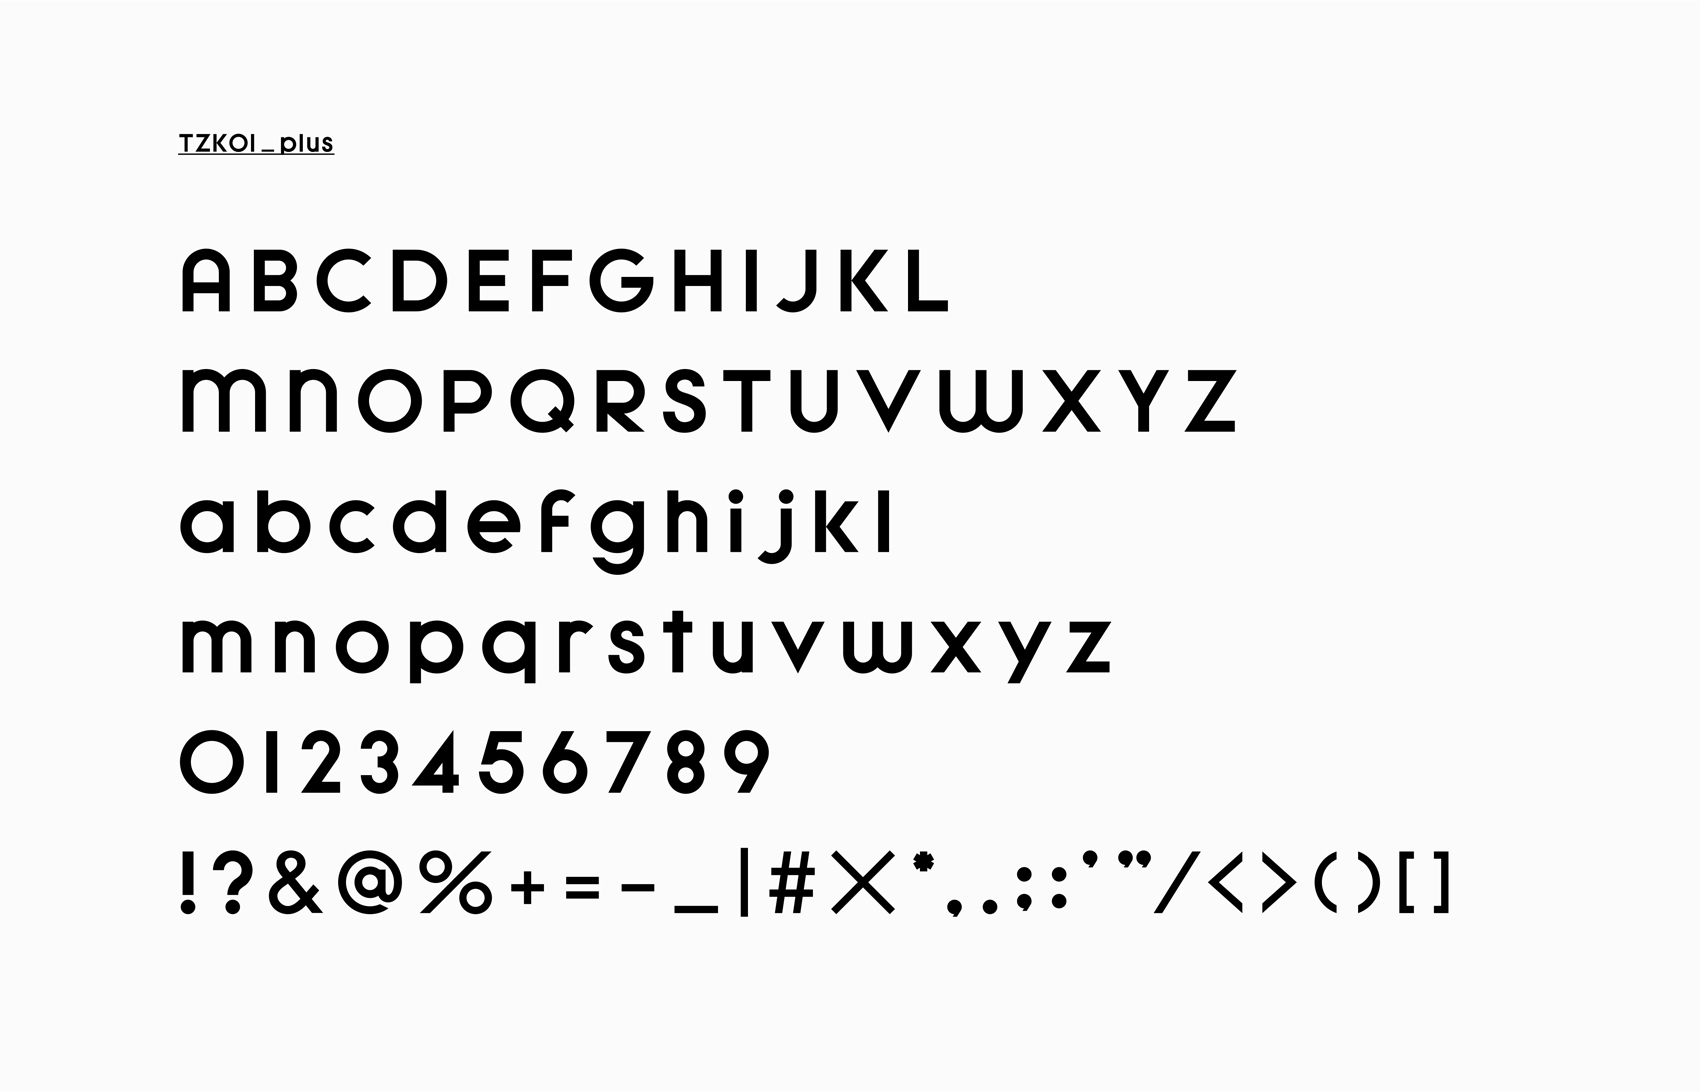 ORIGINAL Typeface